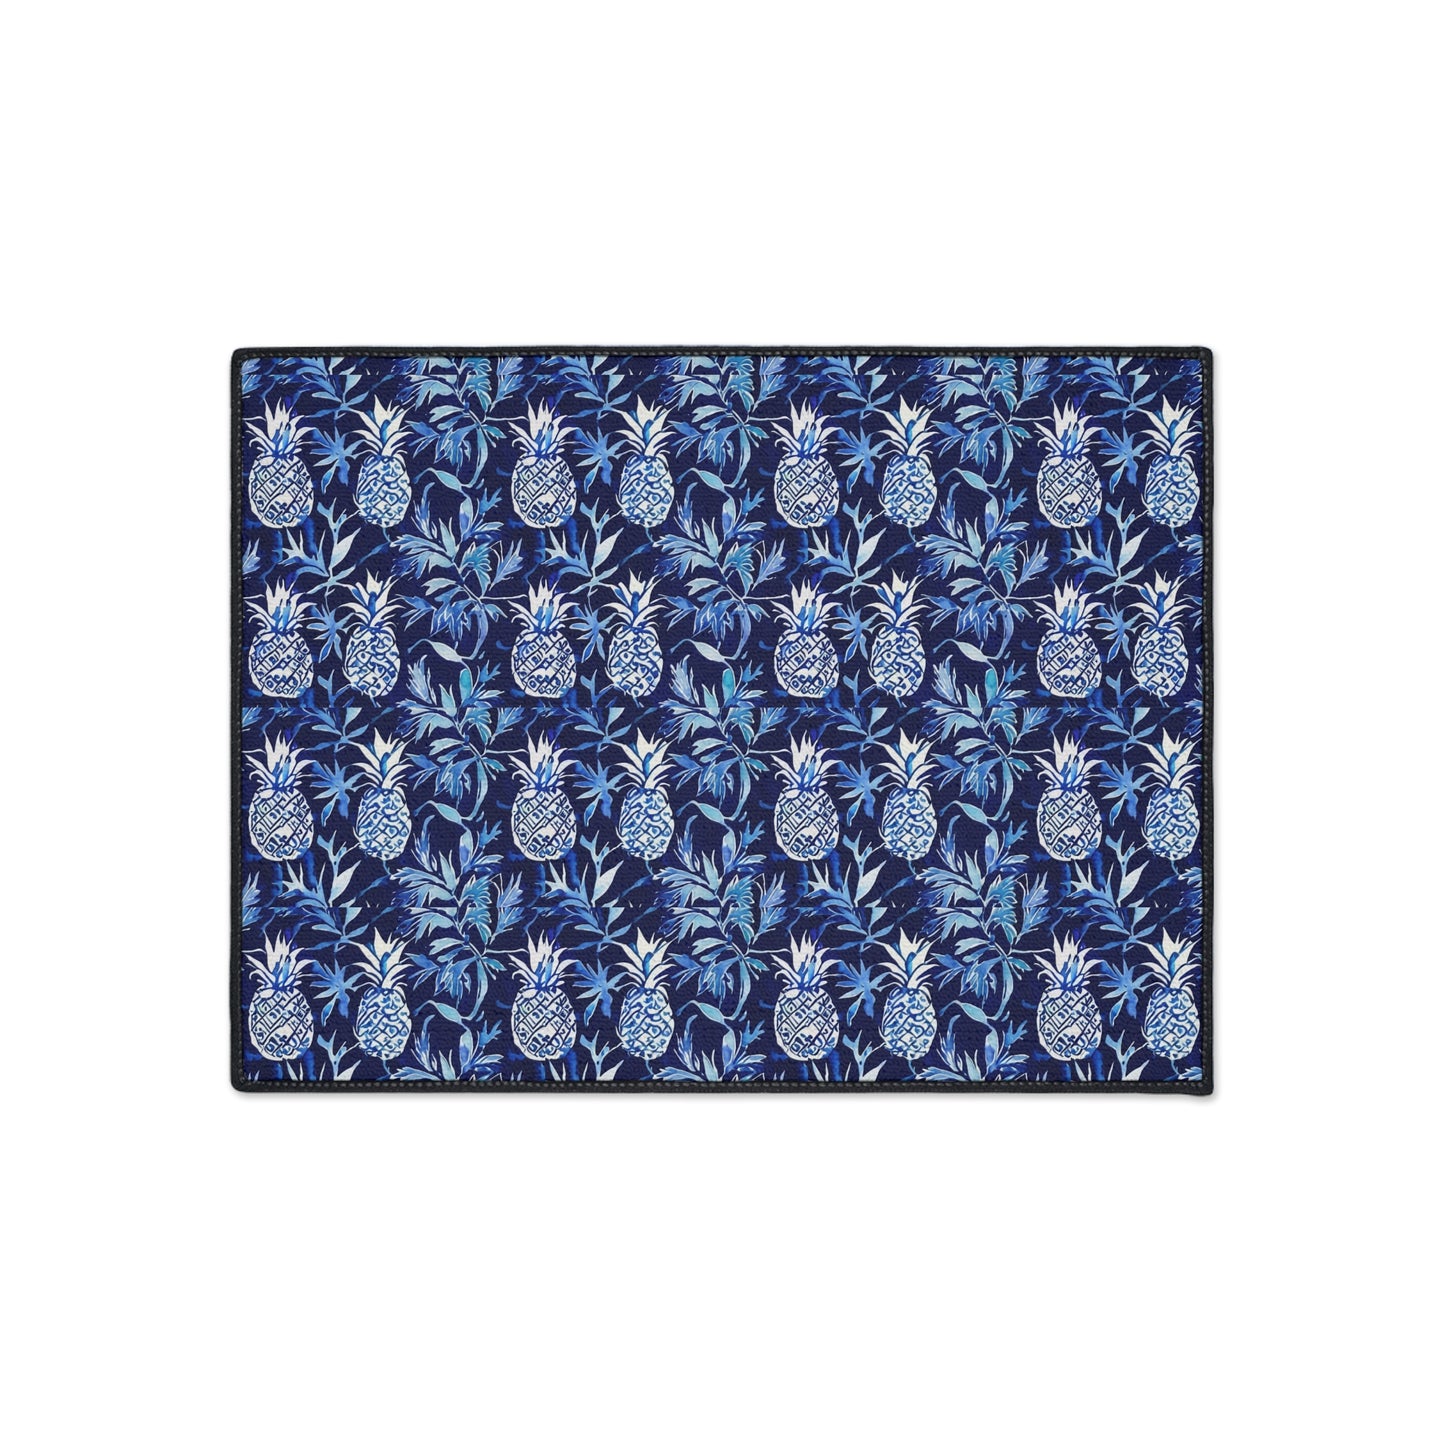 Blue and White Pineapple Batik Decorative Indoor Outdoor Heavy Duty Floor Mat